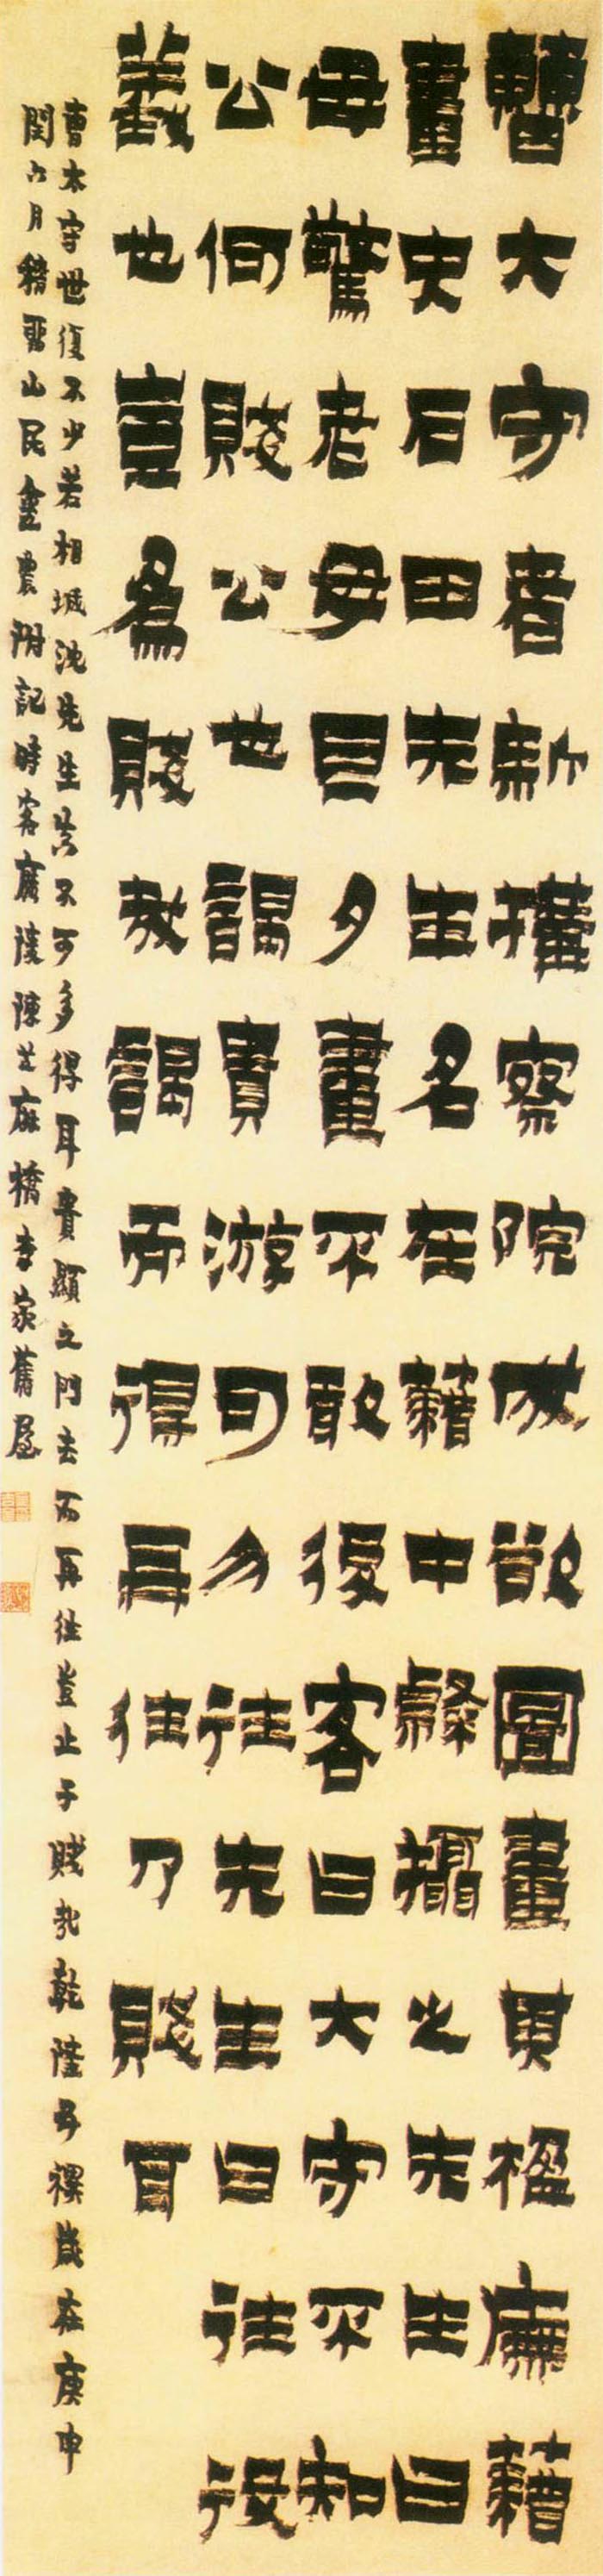 金农《漆书记沈周叙事轴》-北京故宫博物院藏(图1)